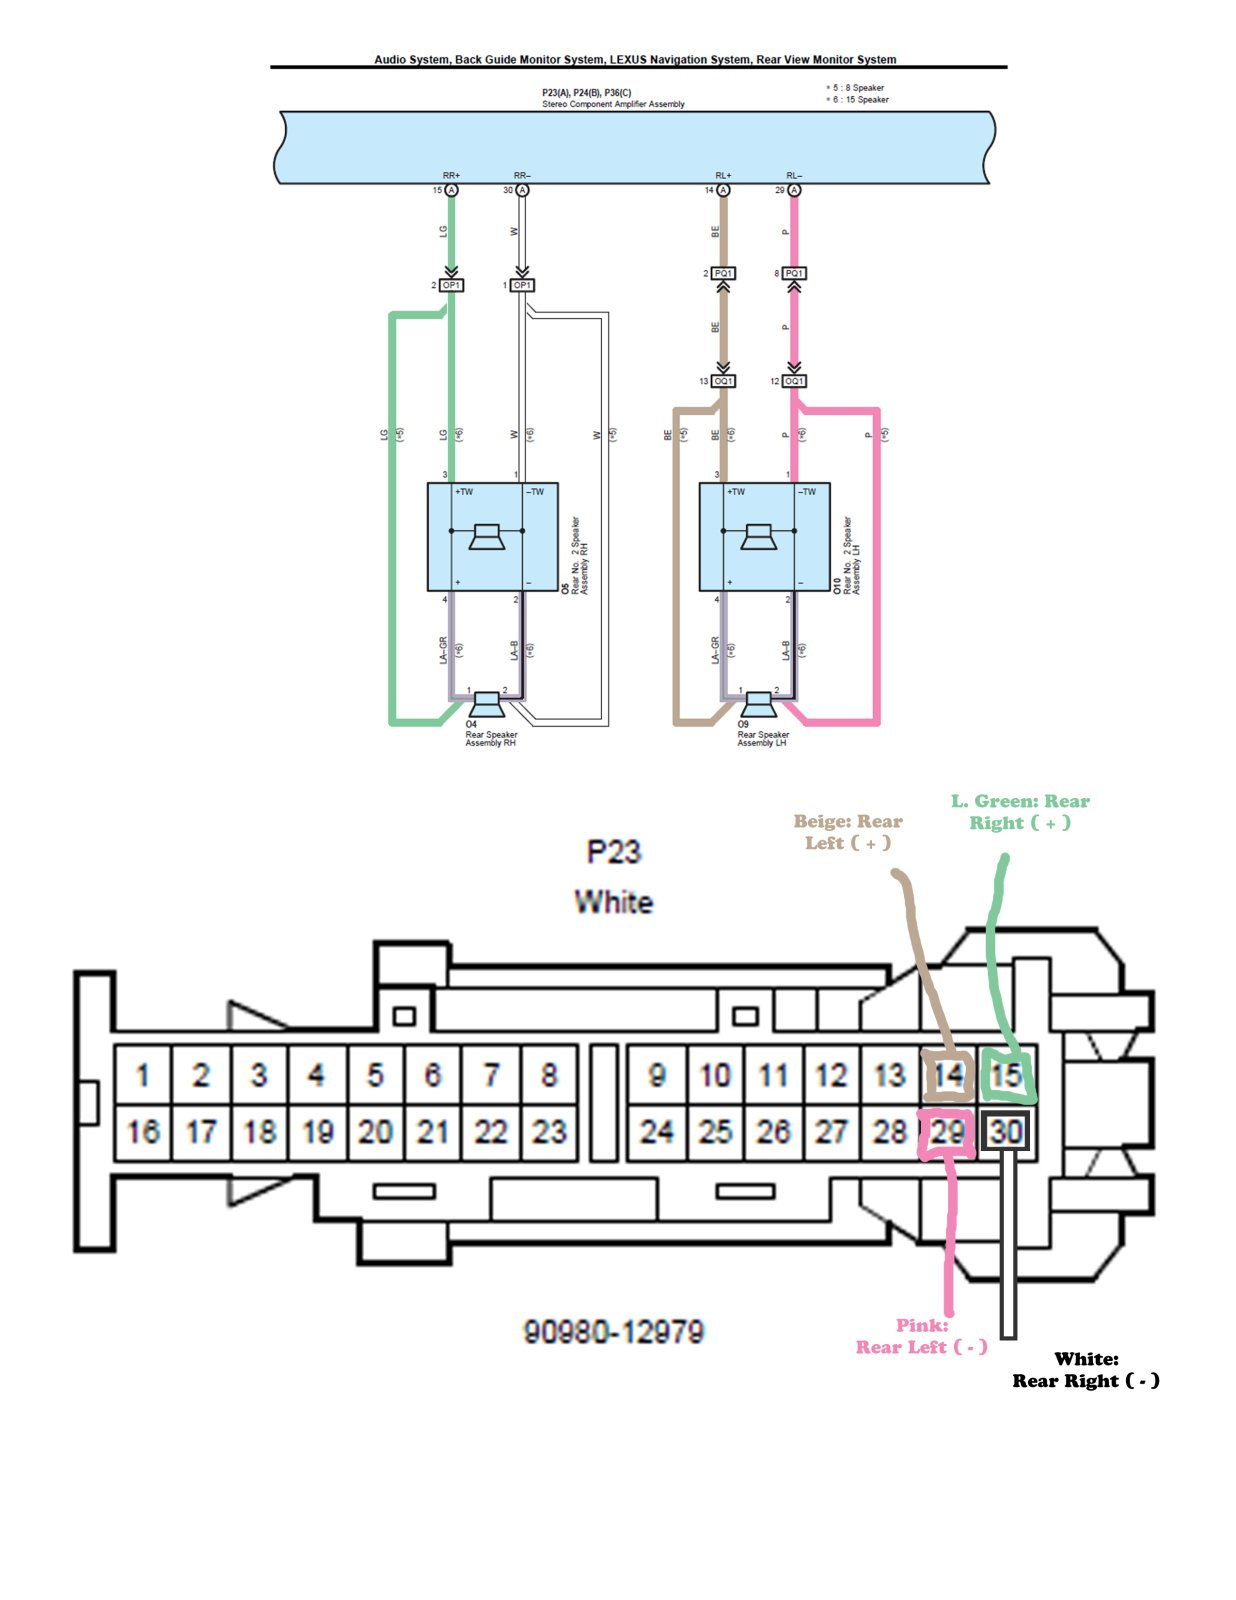 Jl Audio E1200 Wiring Diagram | Wiring Diagram - Jl Audio 500 1 Wiring Diagram